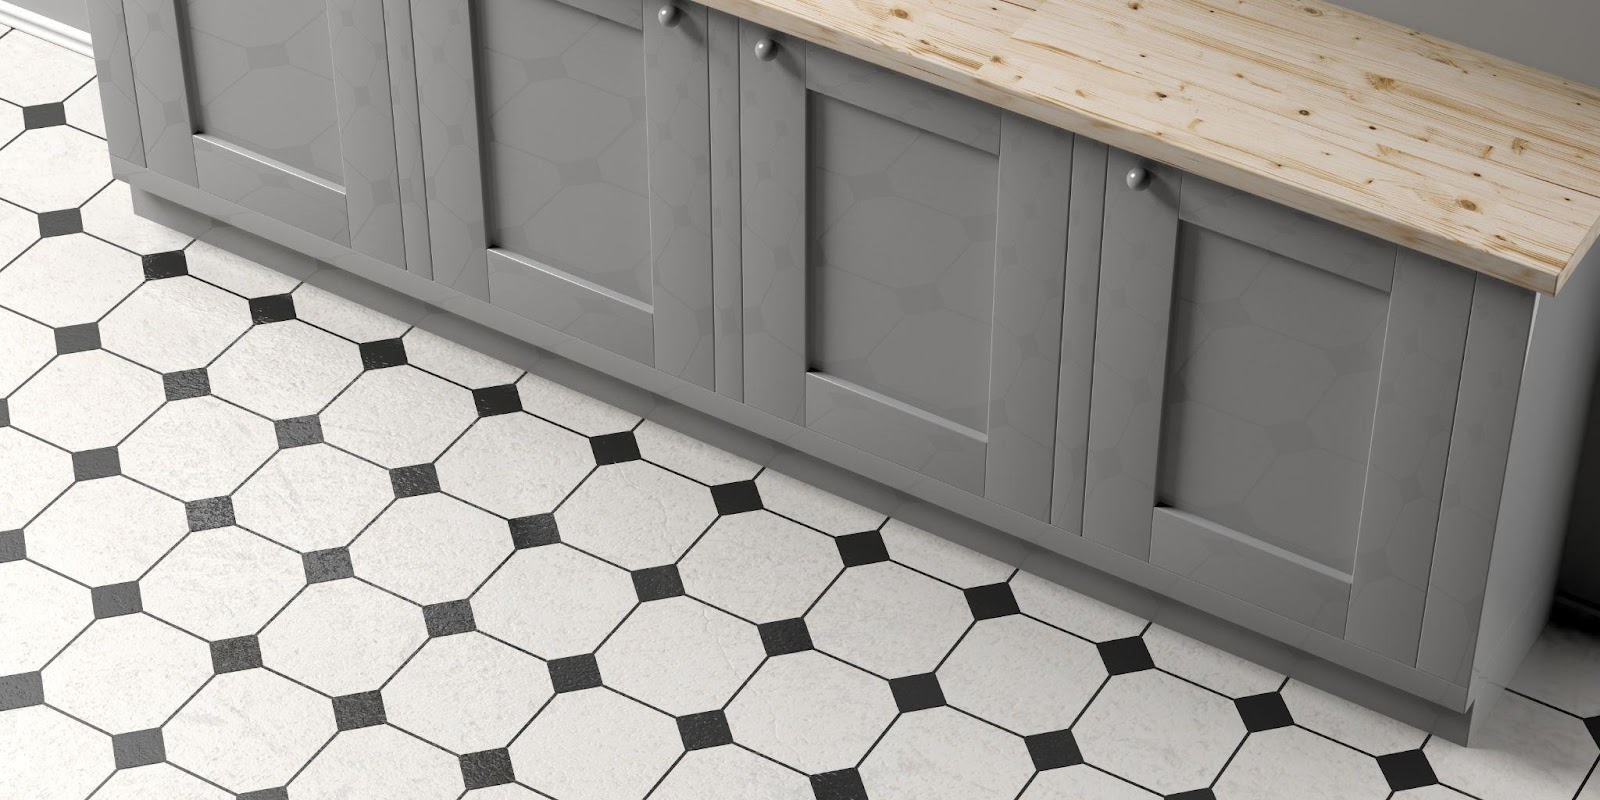 kitchen floor ideas